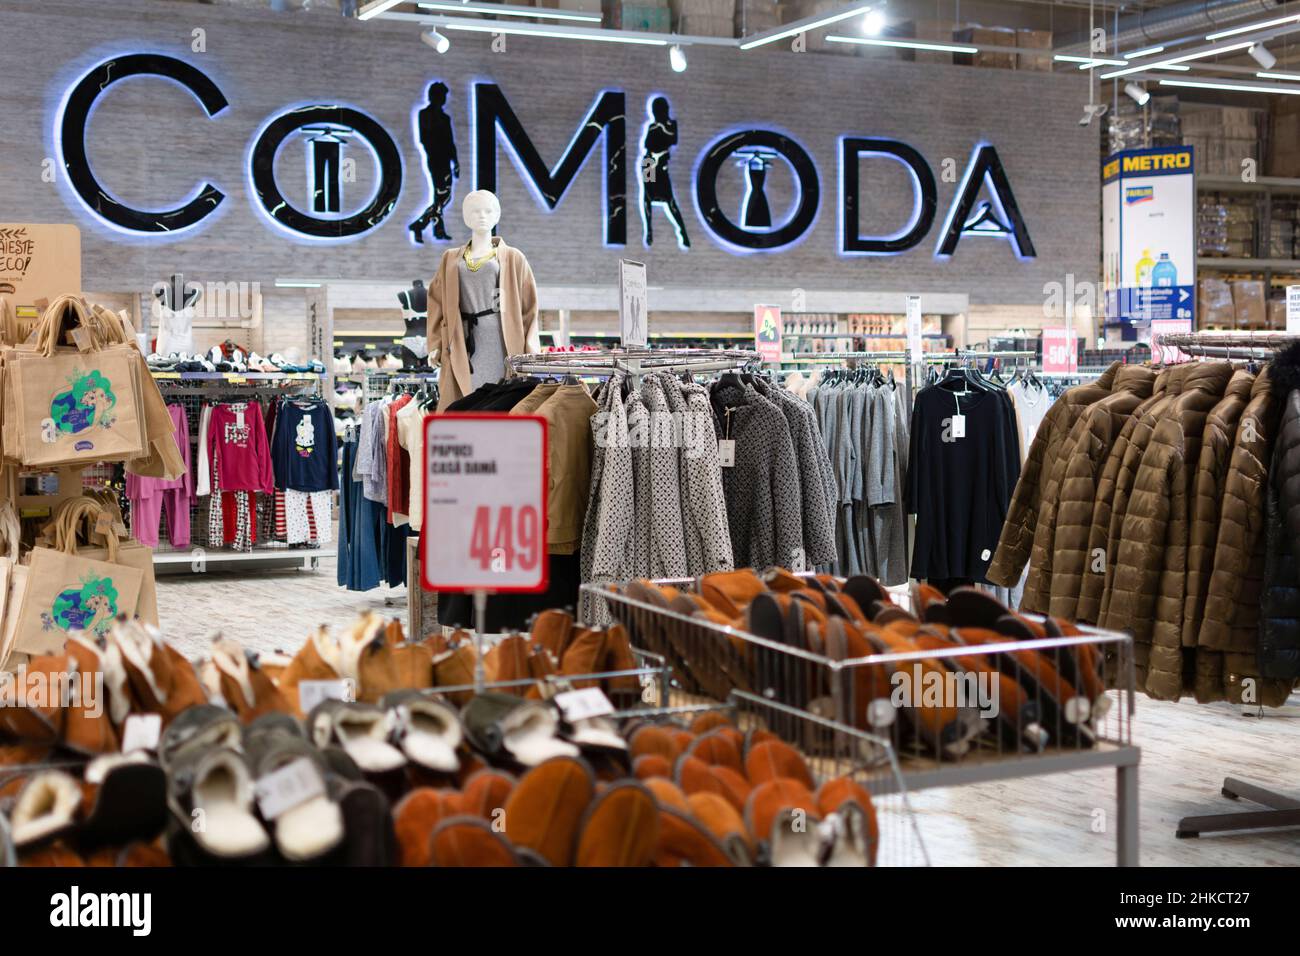 Chisinau, Moldavia - 23 gennaio 2022 angolo dei vestiti Co Moda. Reparto abbigliamento nel ipermercato Metro Cash Carry. Foto Stock